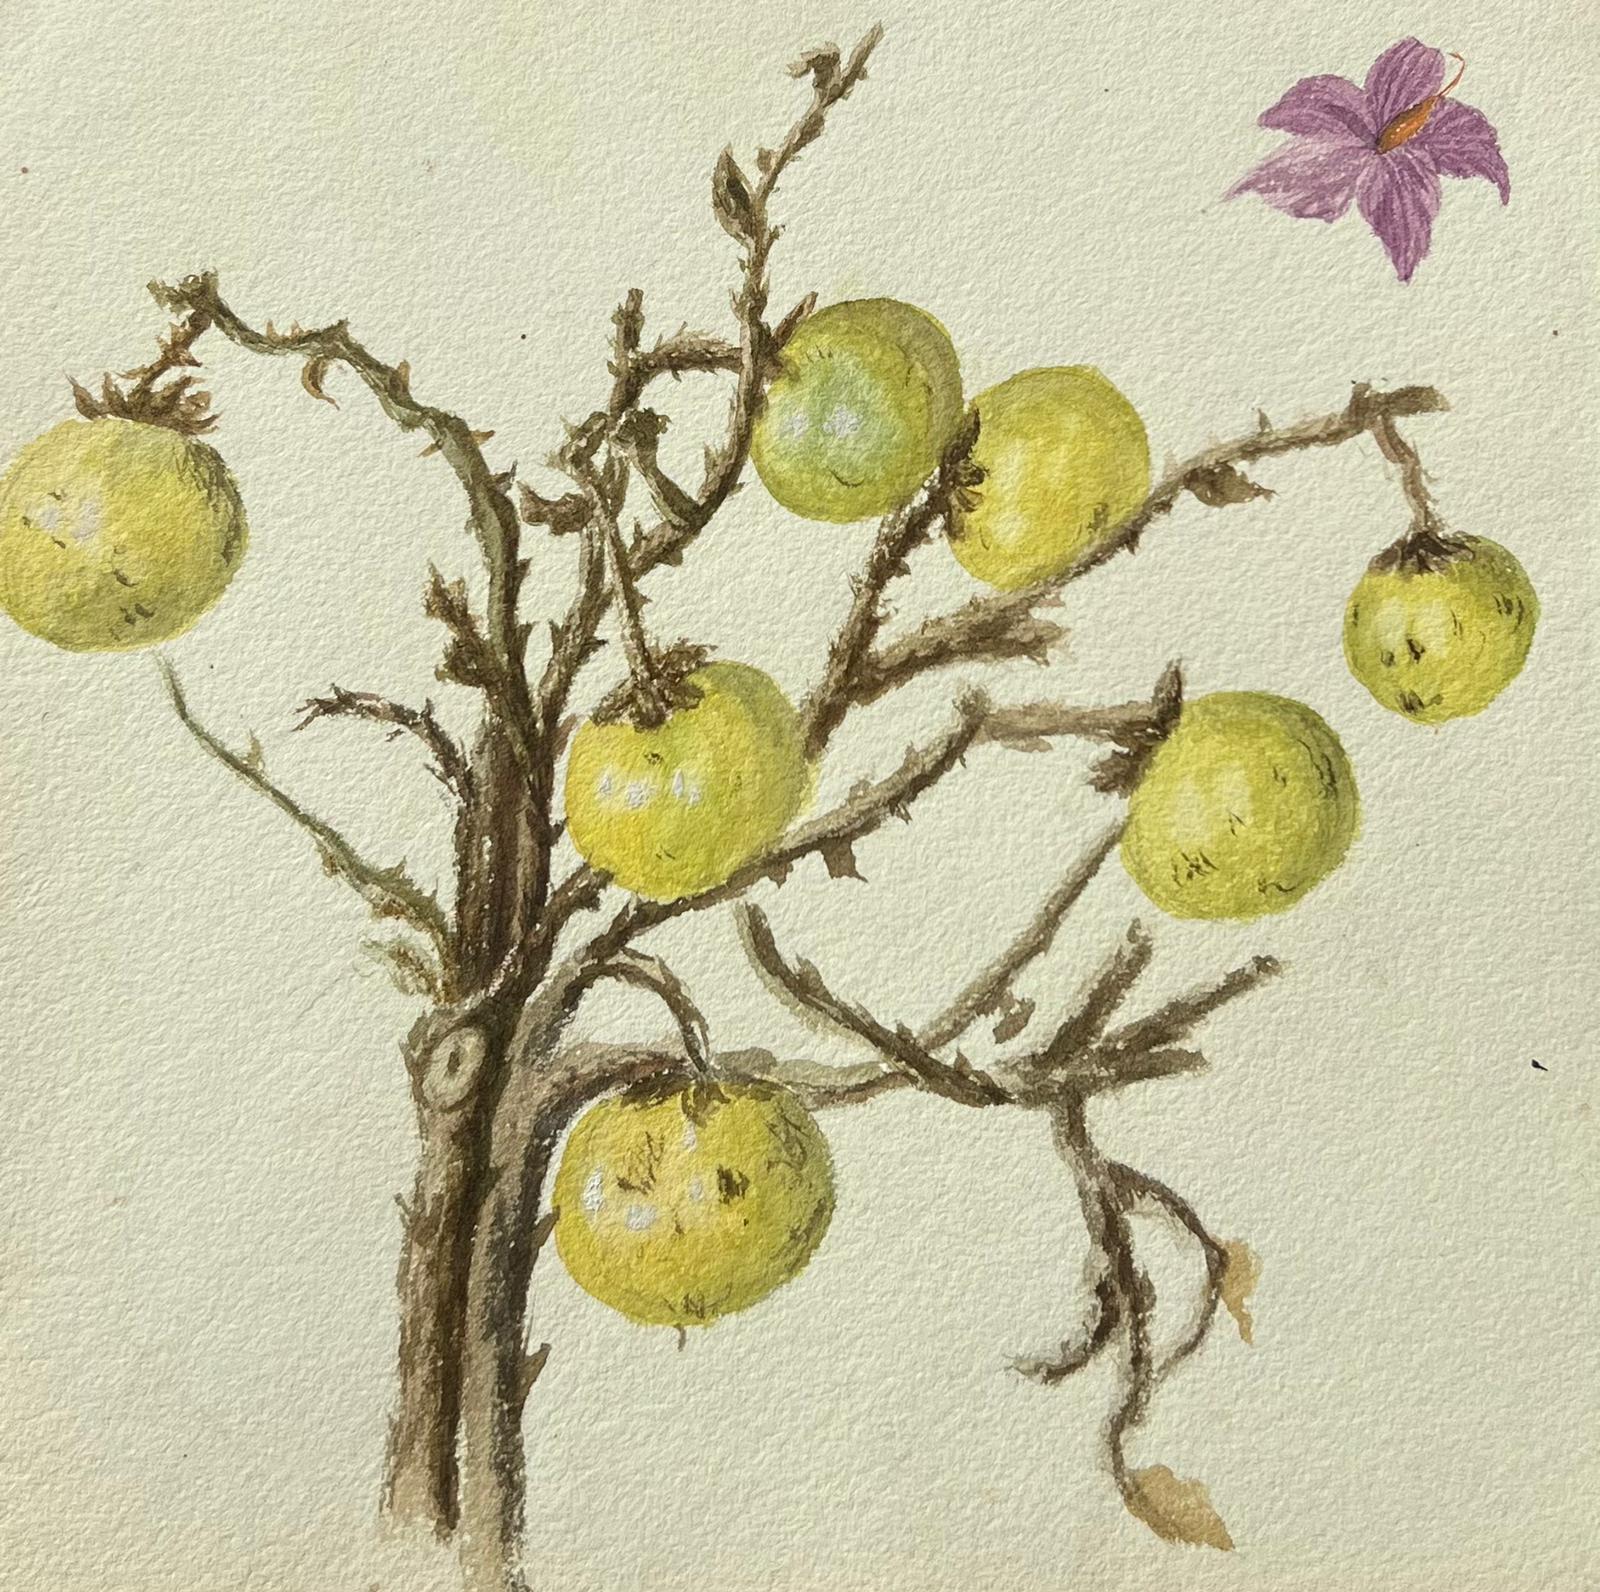 Still-Life Painting Caroline Worsley - Belle peinture botanique britannique ancienne représentant des framboises sauvages sur une vigne